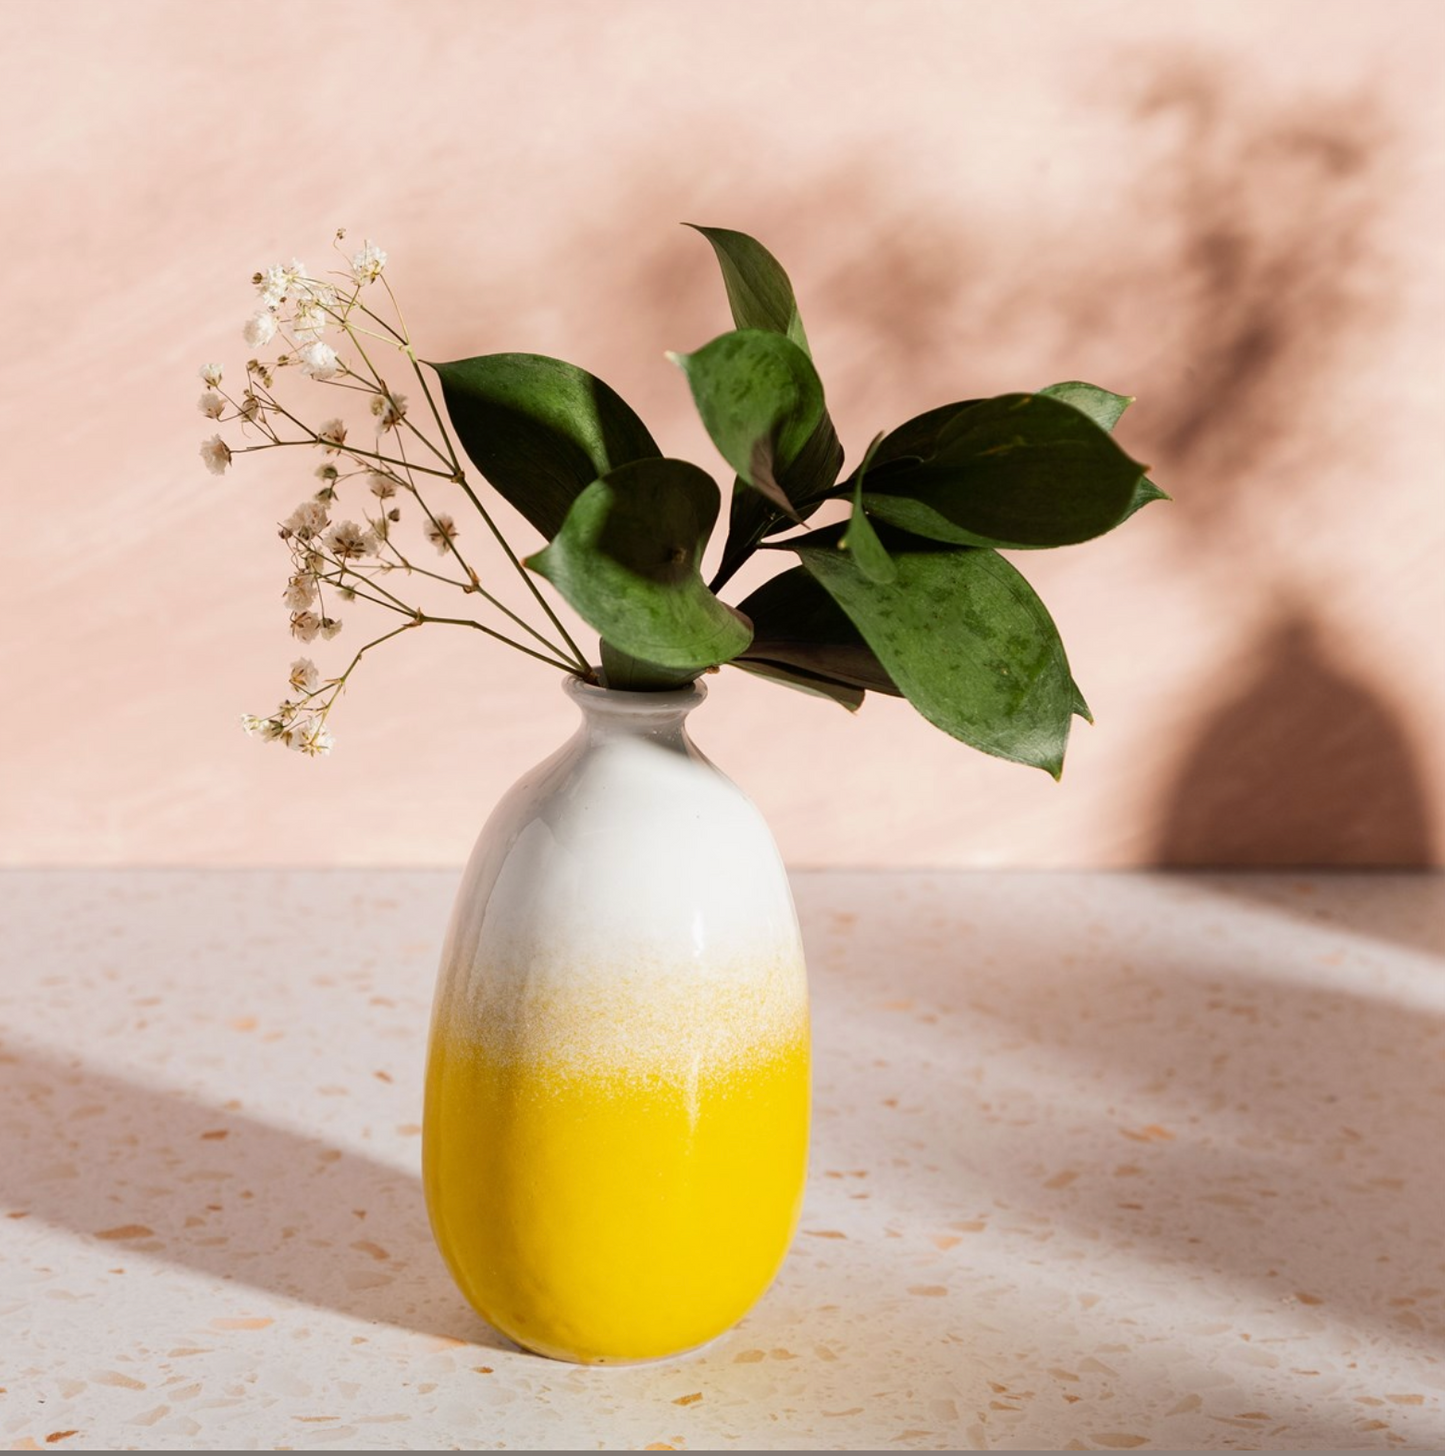 Dip Glazed Ombre Yellow Vase